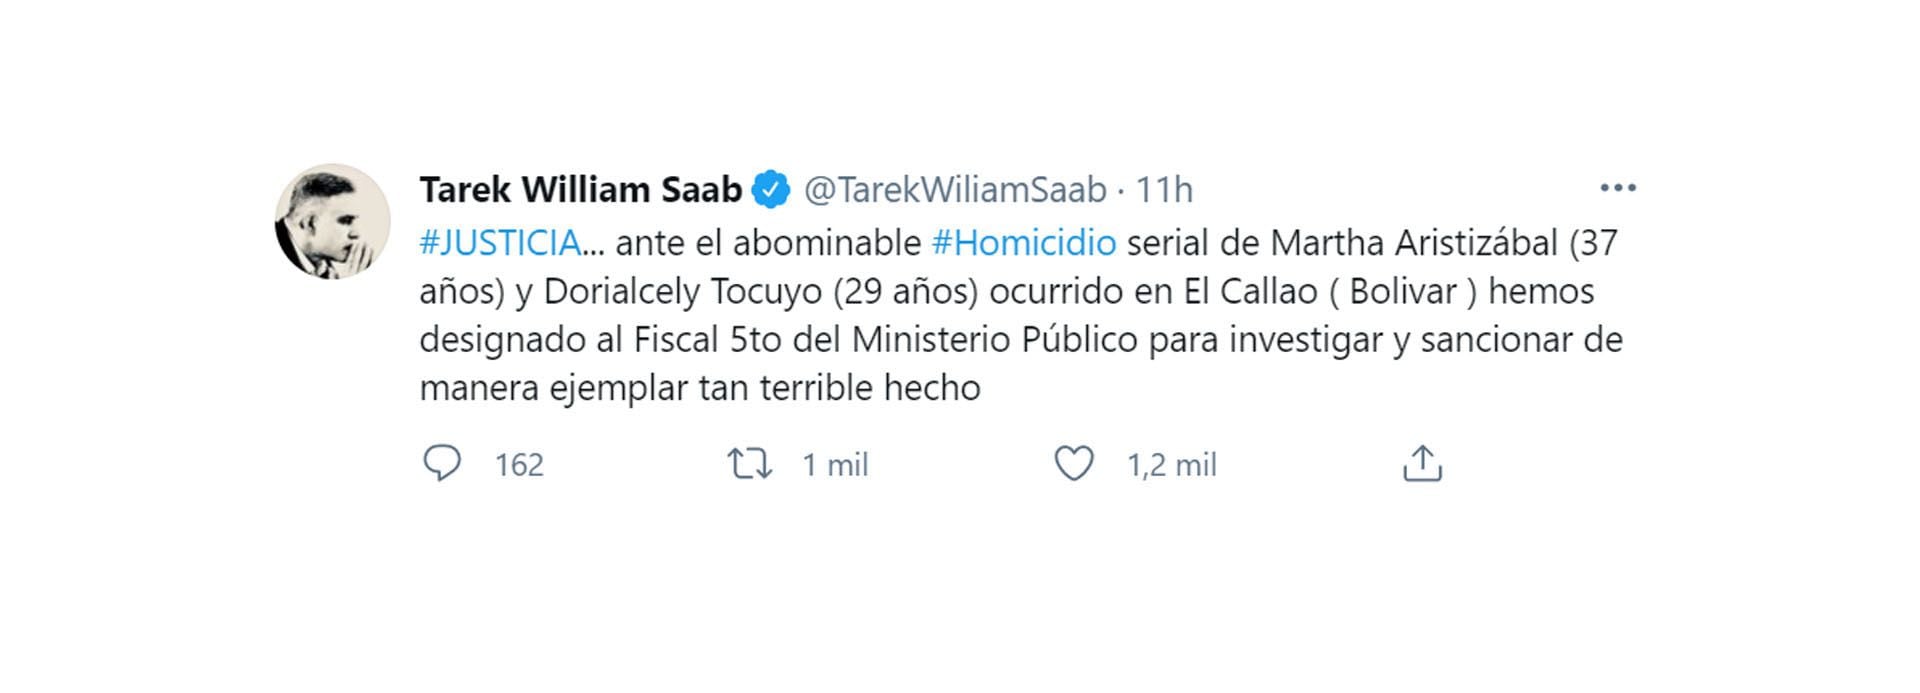 El tuit del fiscal Tarek Saab